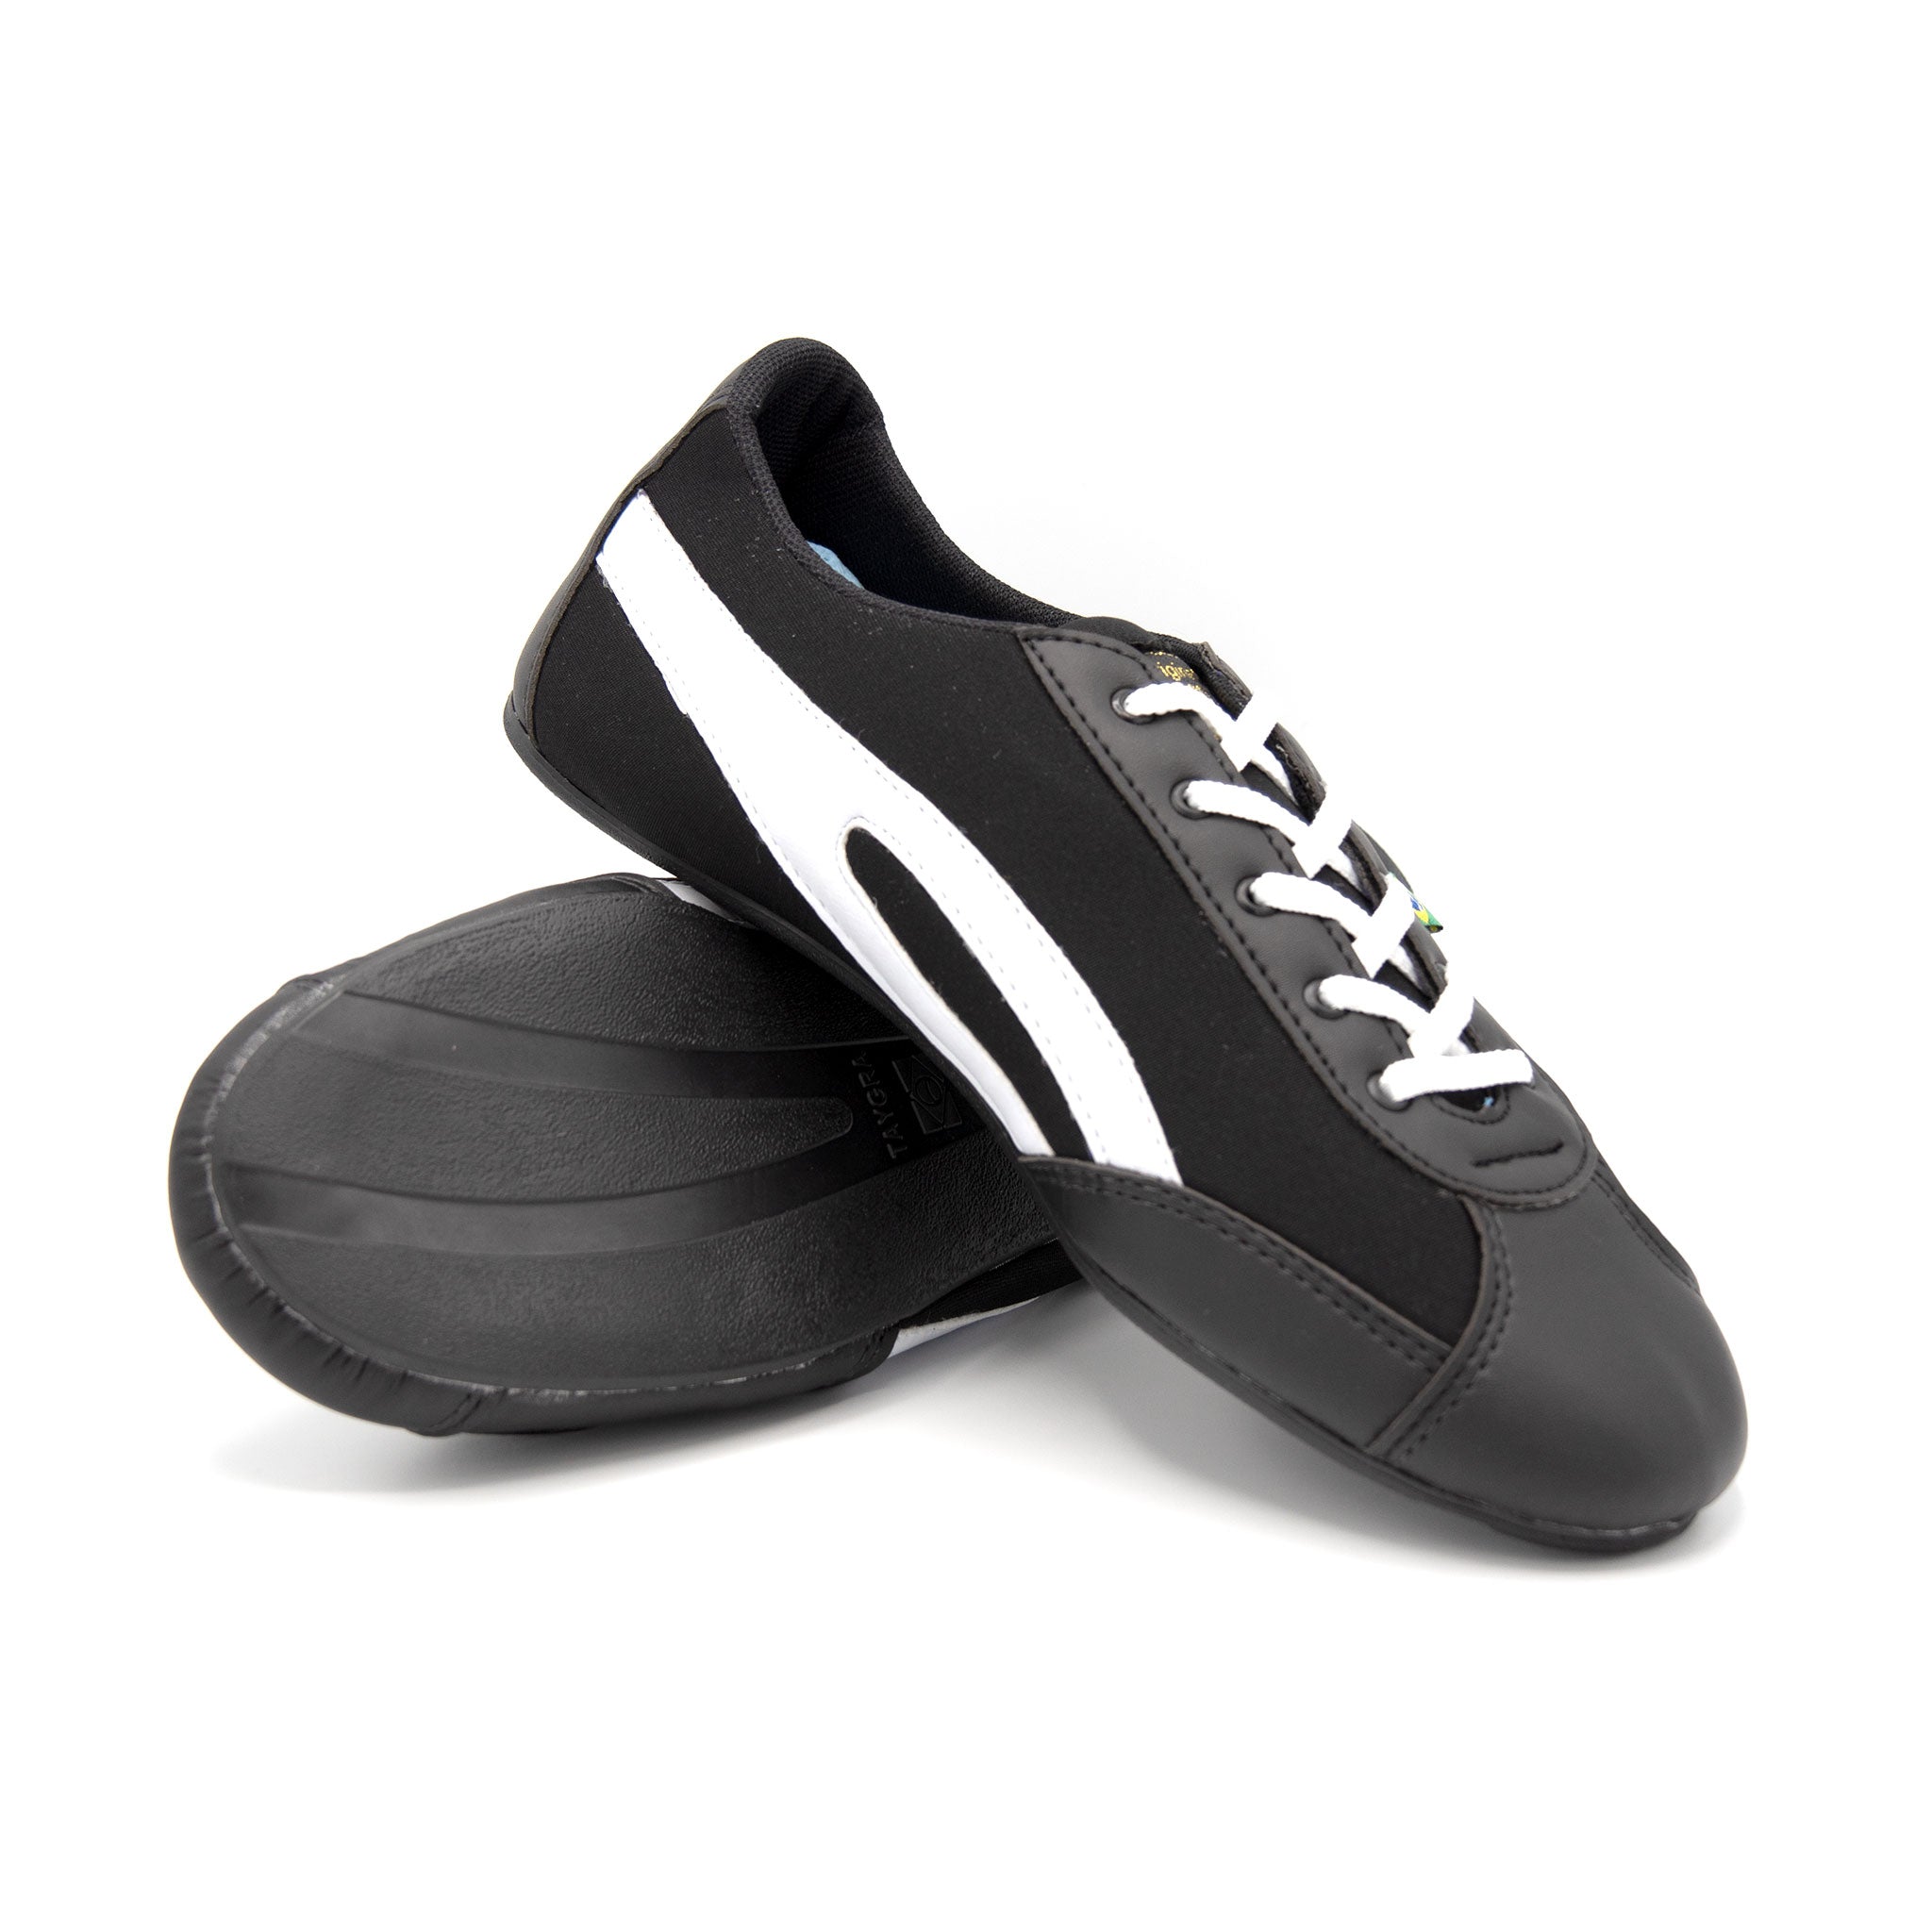 Slim Dança Sneakers - Black & White